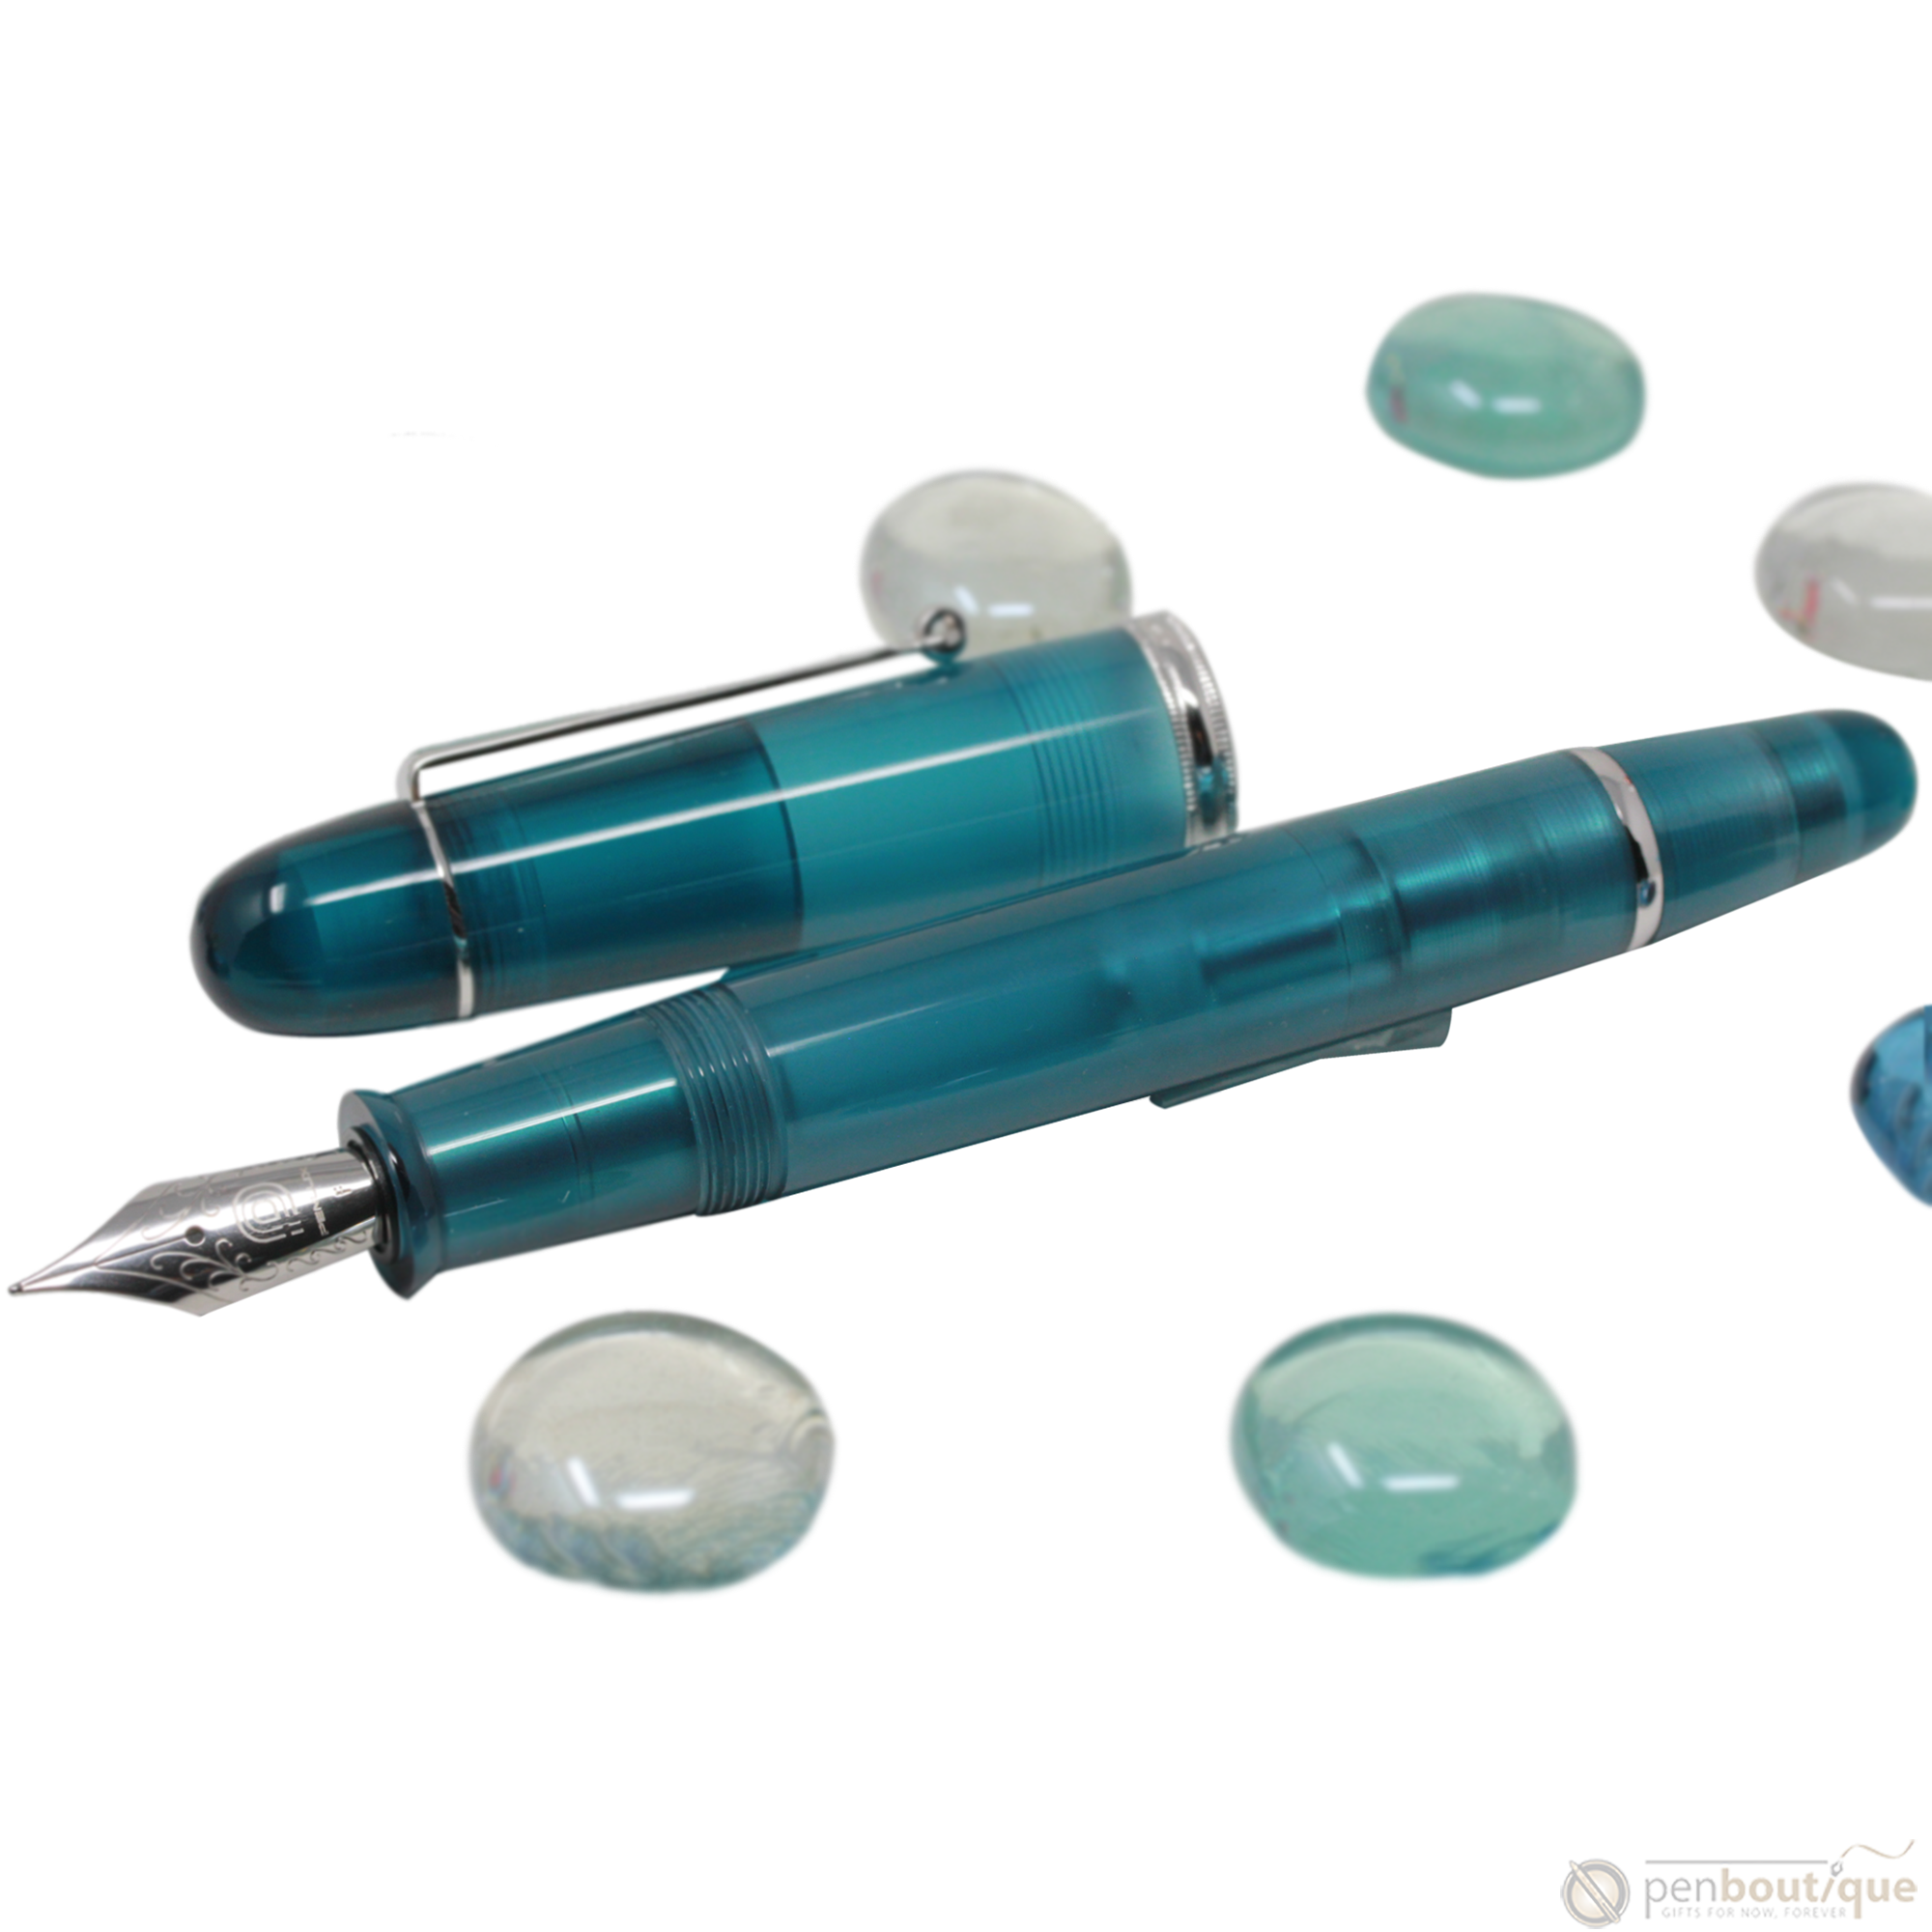 Penlux Masterpiece Grande Fountain Pen - Deep Sea-Pen Boutique Ltd